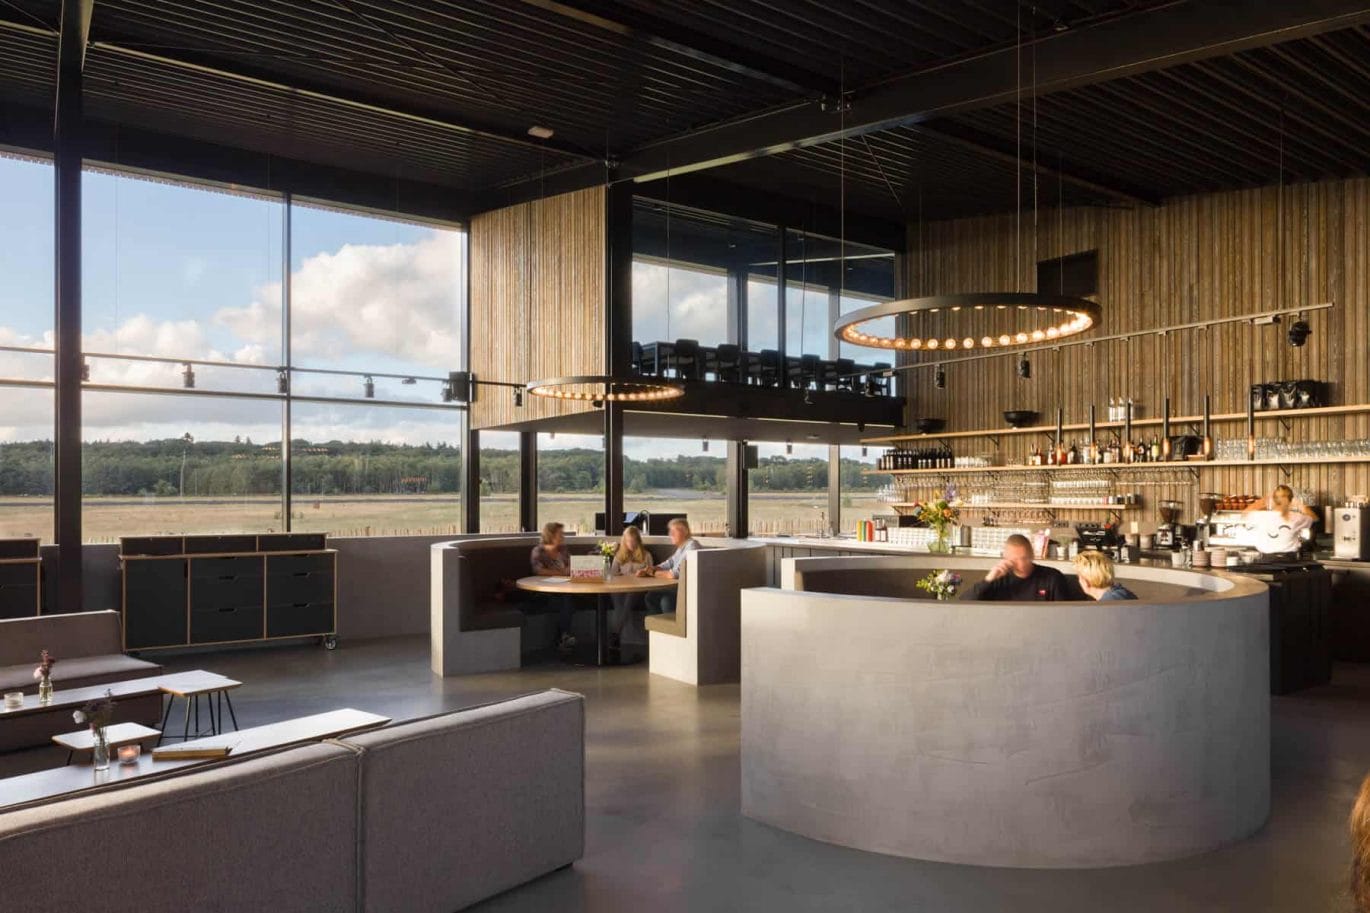 Cafe-restaurant Soesterdal door VOCUS architecten